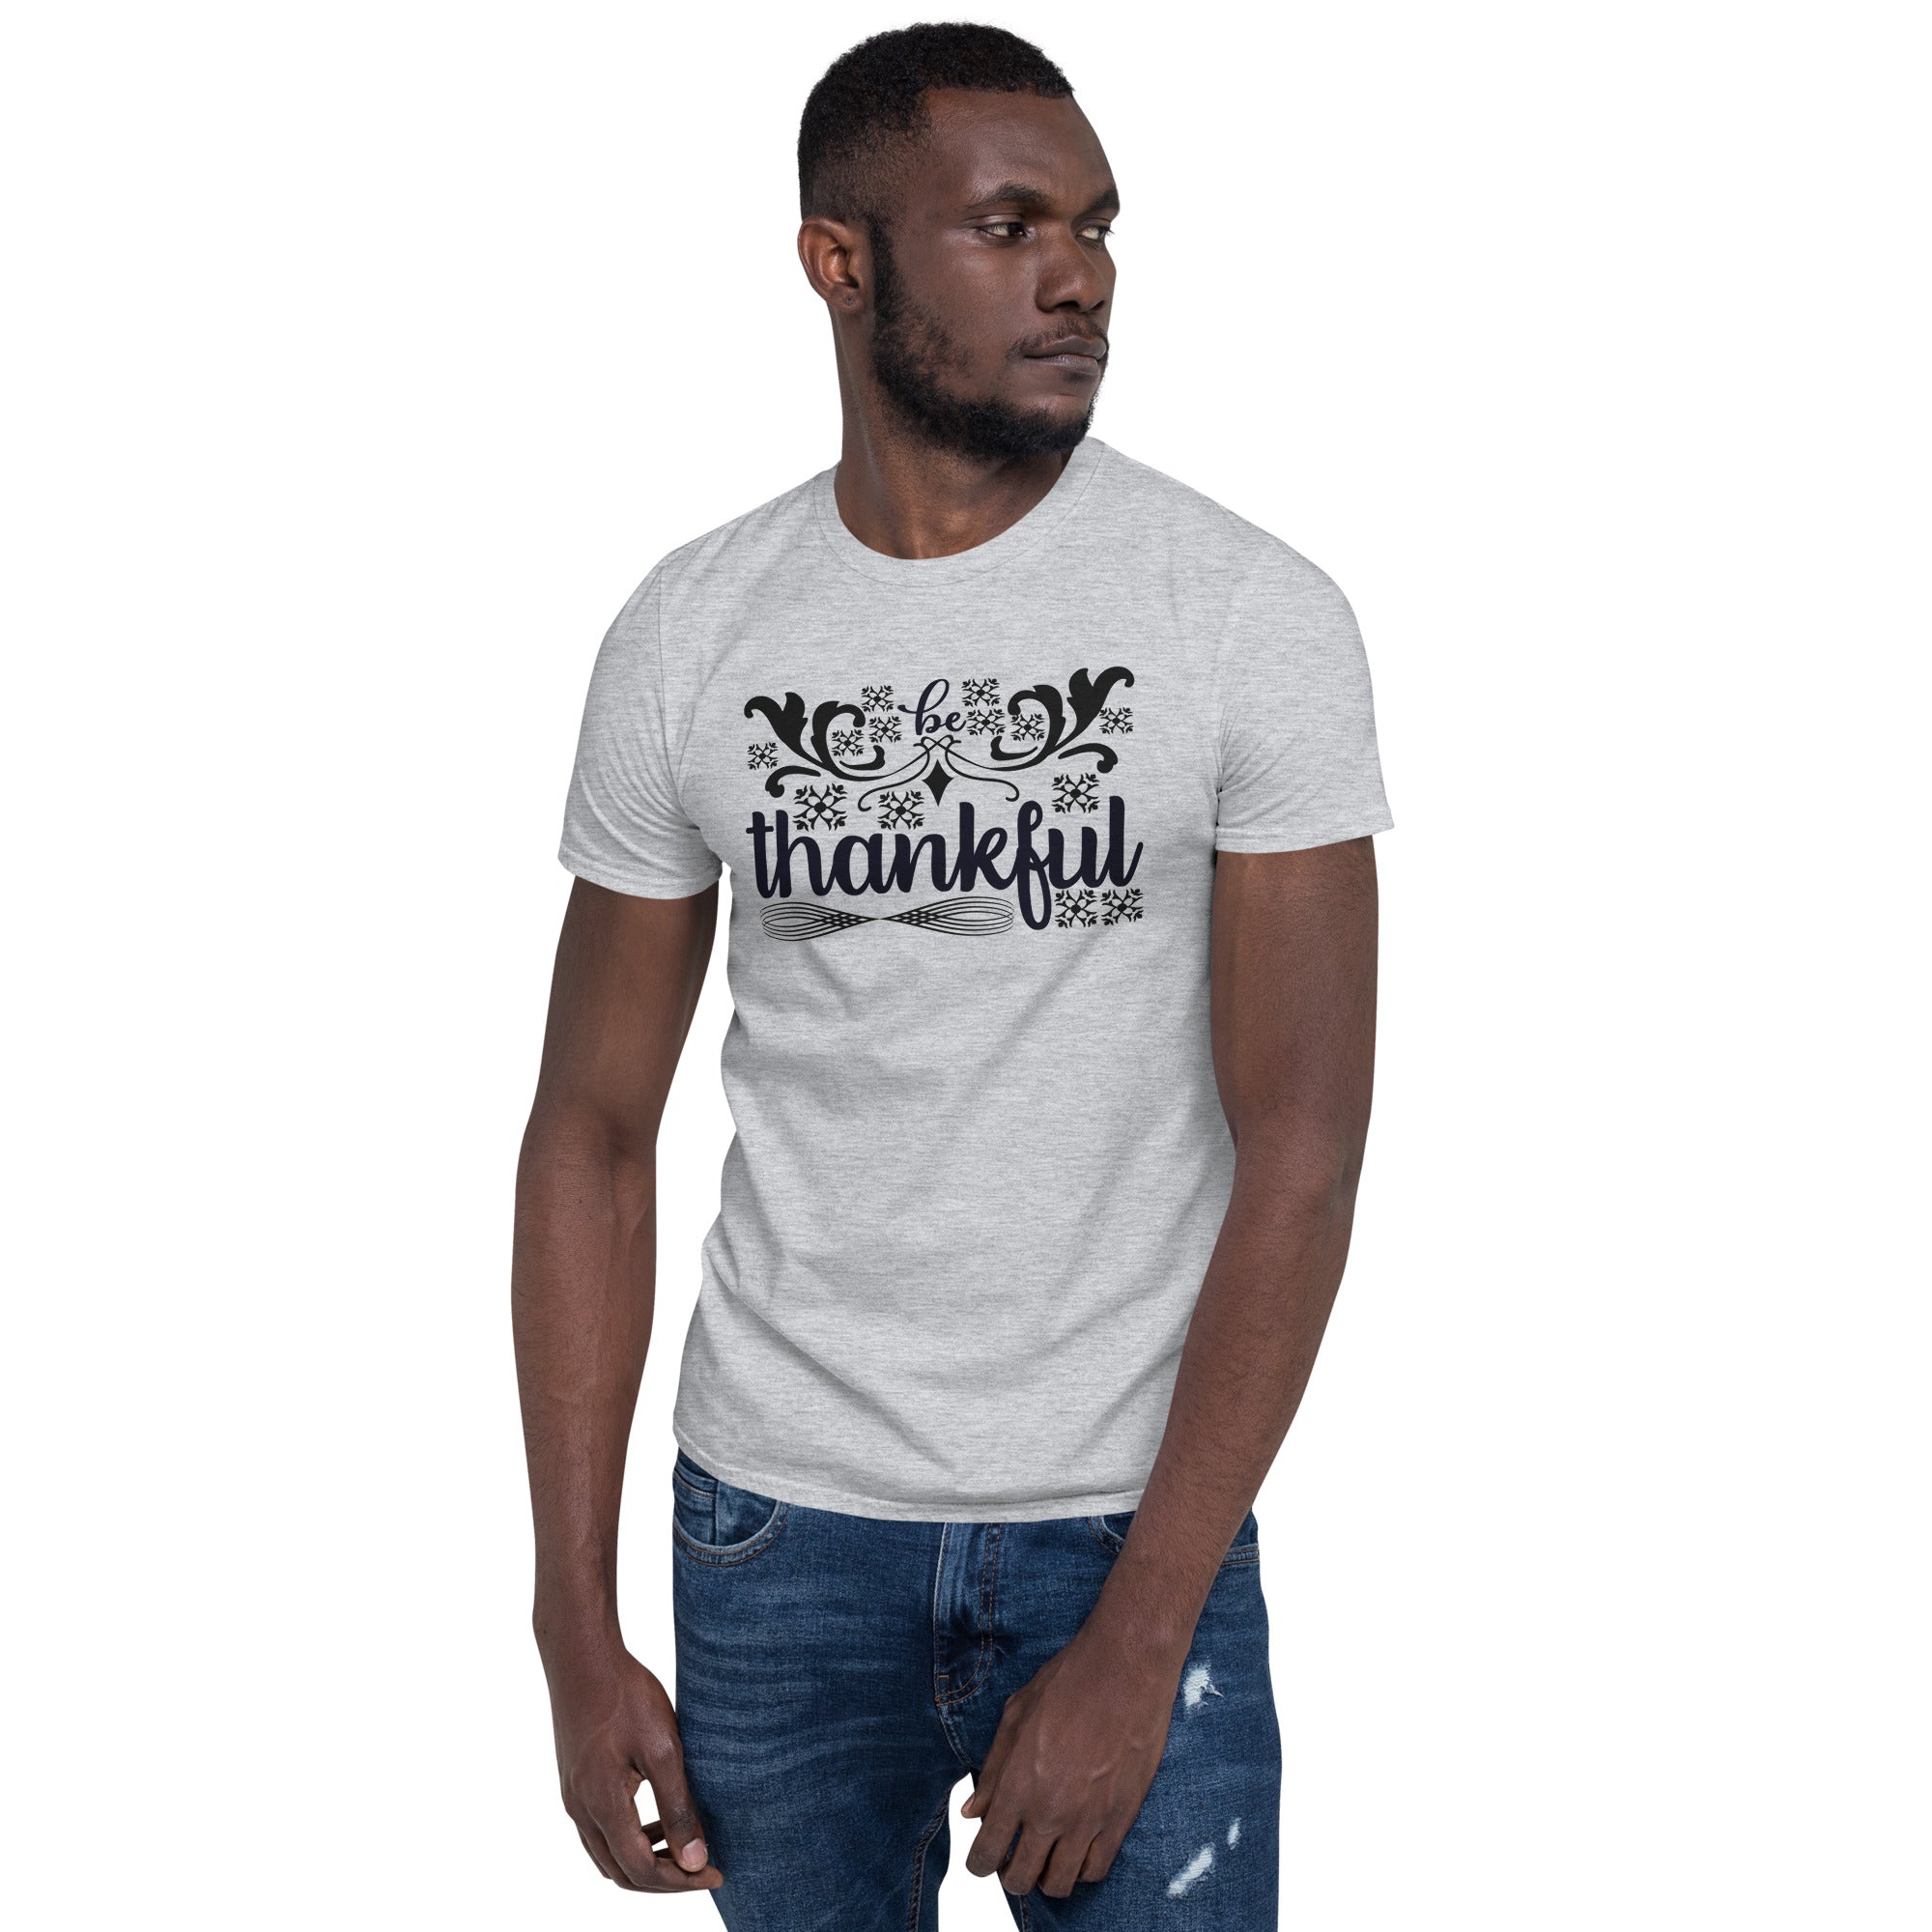 Thankful - Short-Sleeve Unisex T-Shirt